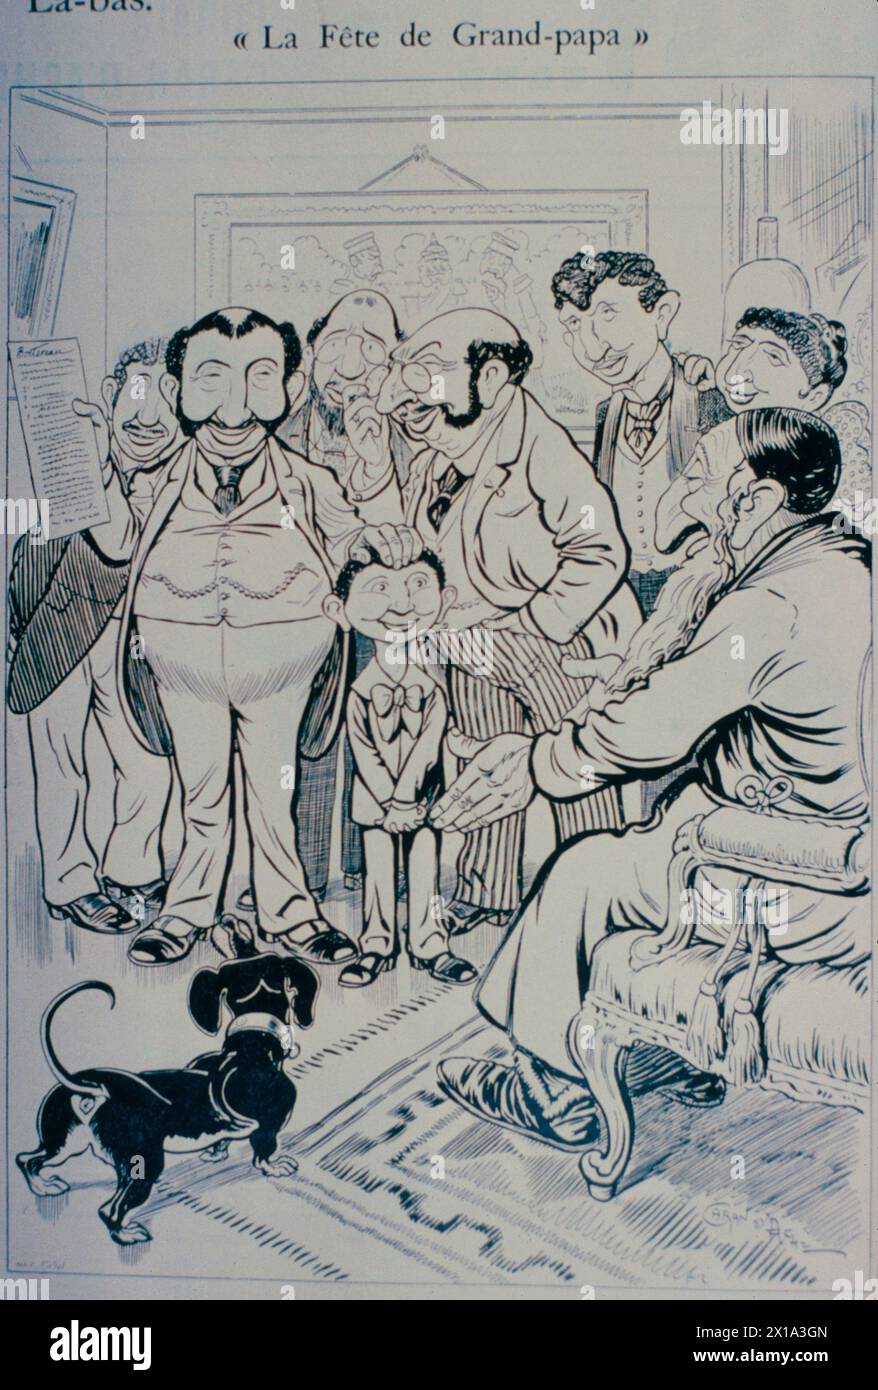 Grandpapas Festtag, antisemitischer Zeichentrick, der während der Dreyfus-Affäre in Frankreich 1890 veröffentlicht wurde Stockfoto